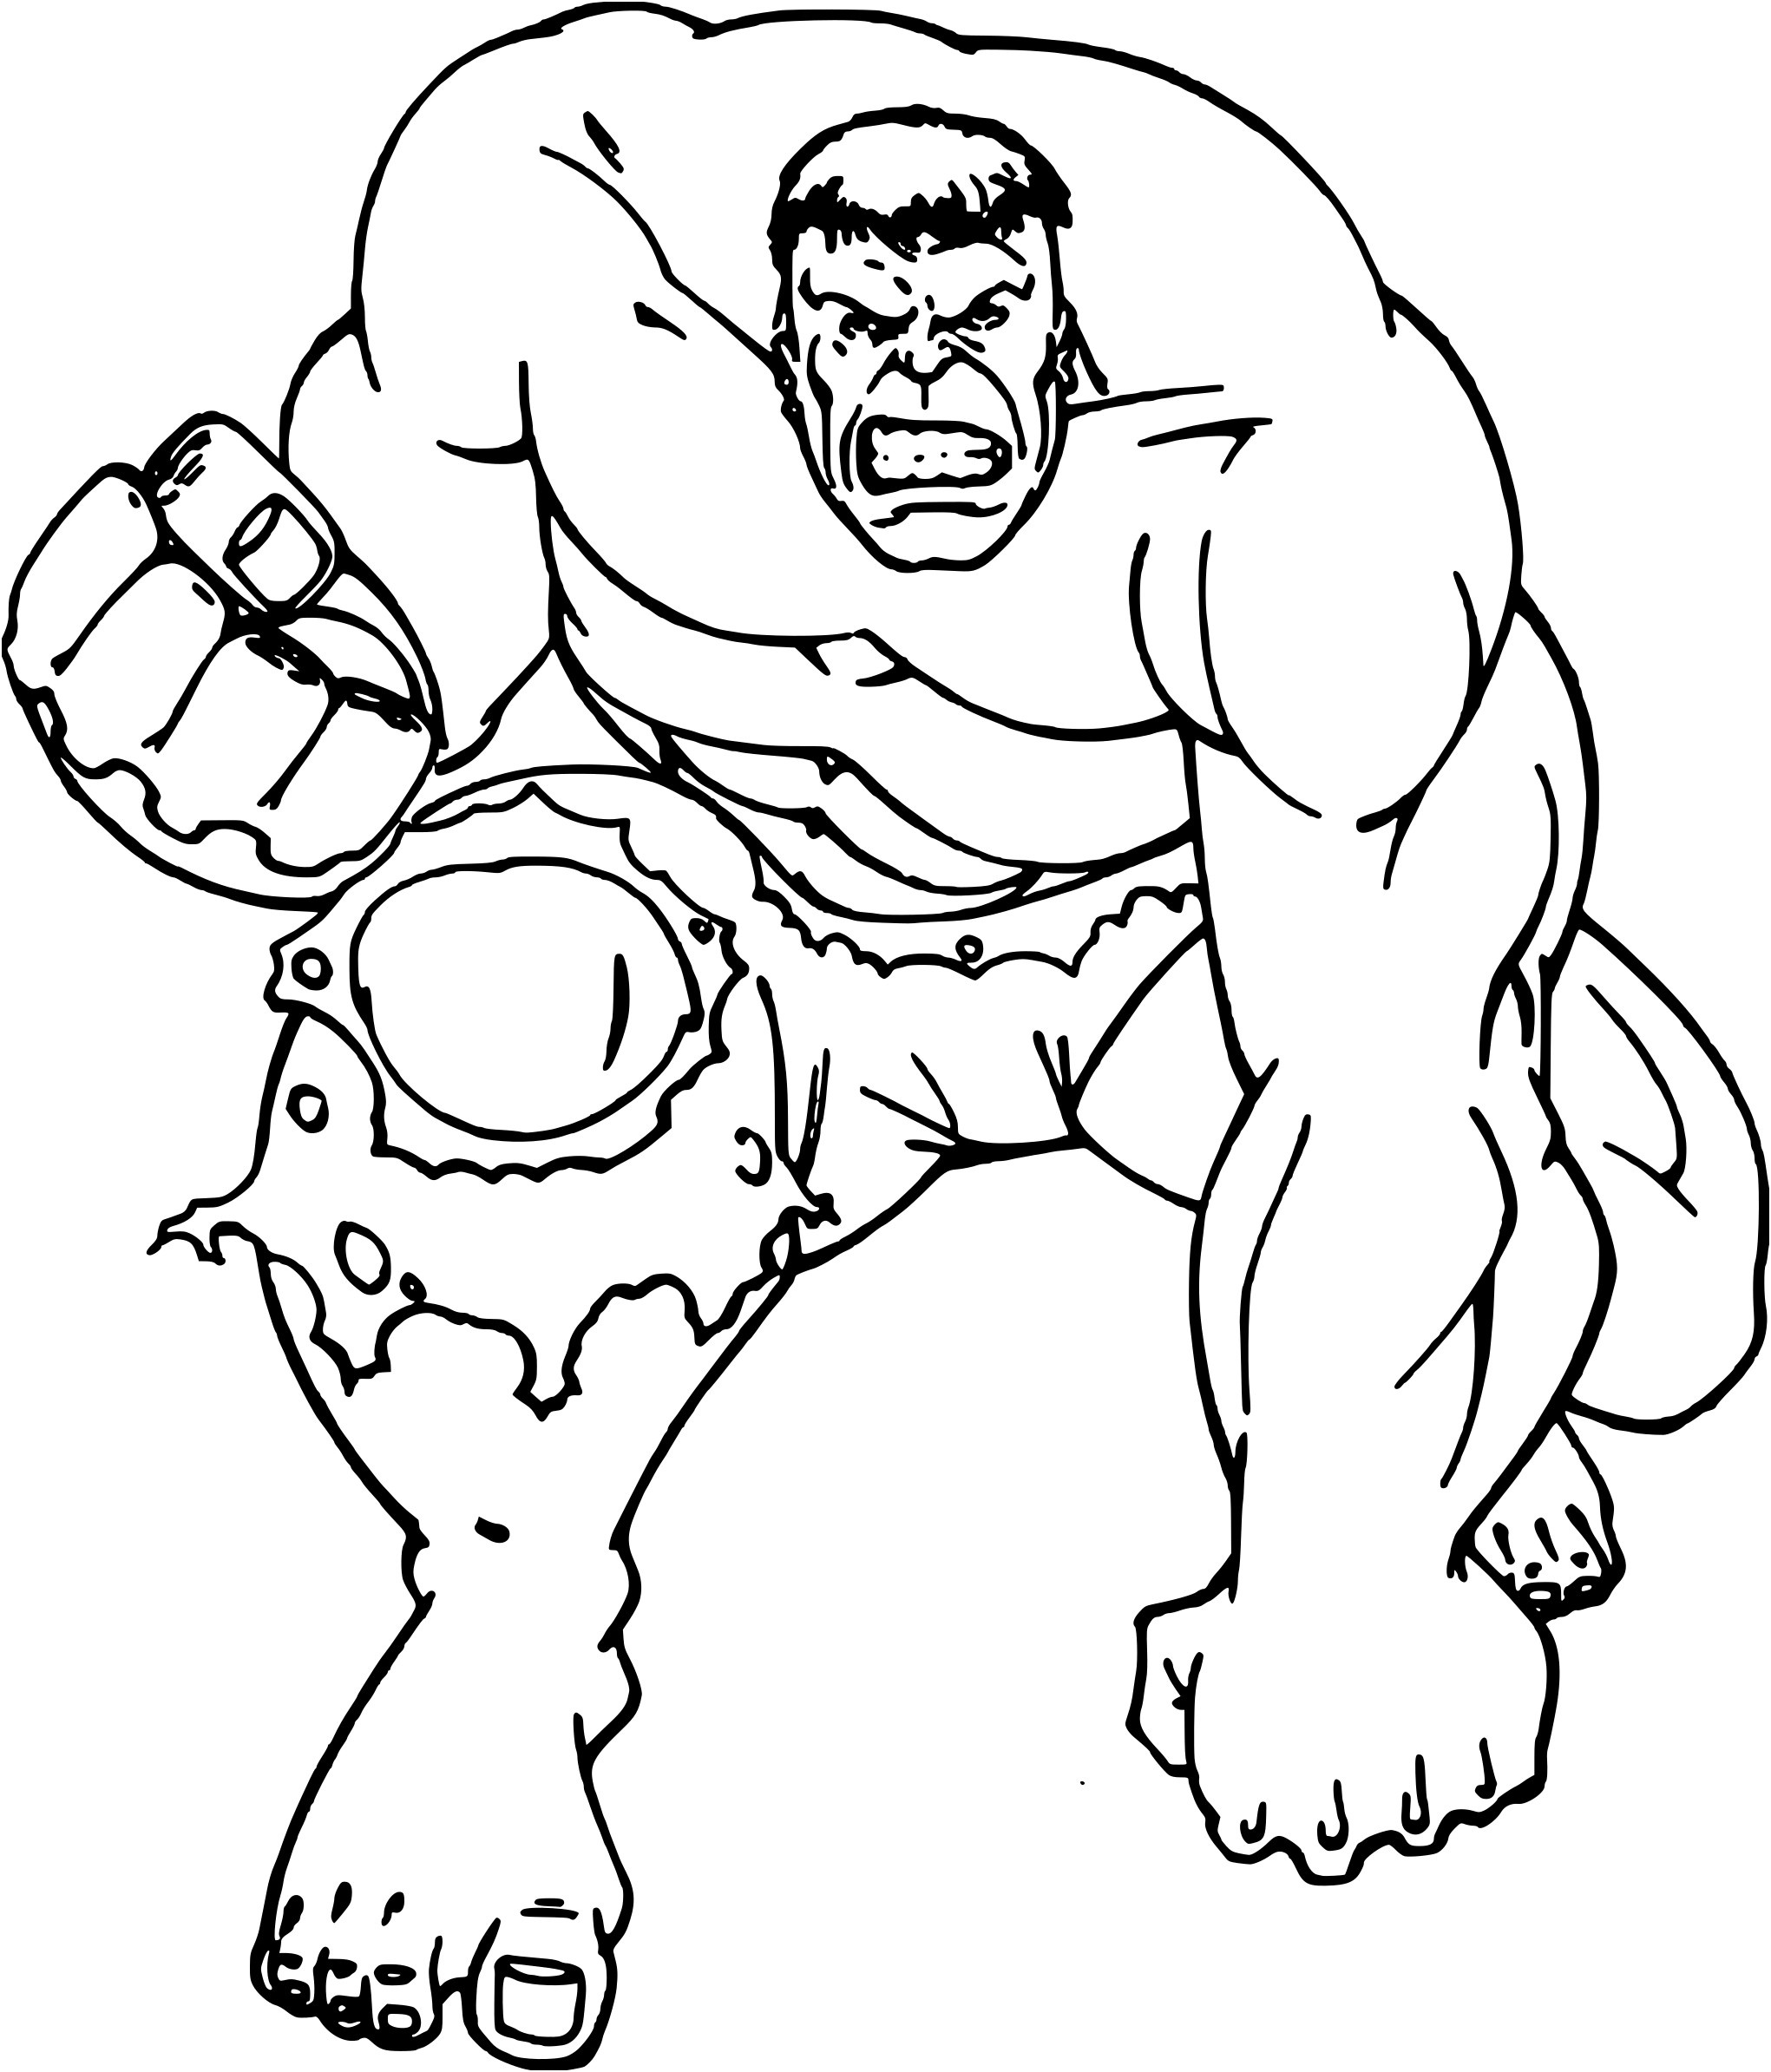 Coloriage De Hulk Élégant Coloriage Hulk Le Super Héros à Imprimer Et Colorier